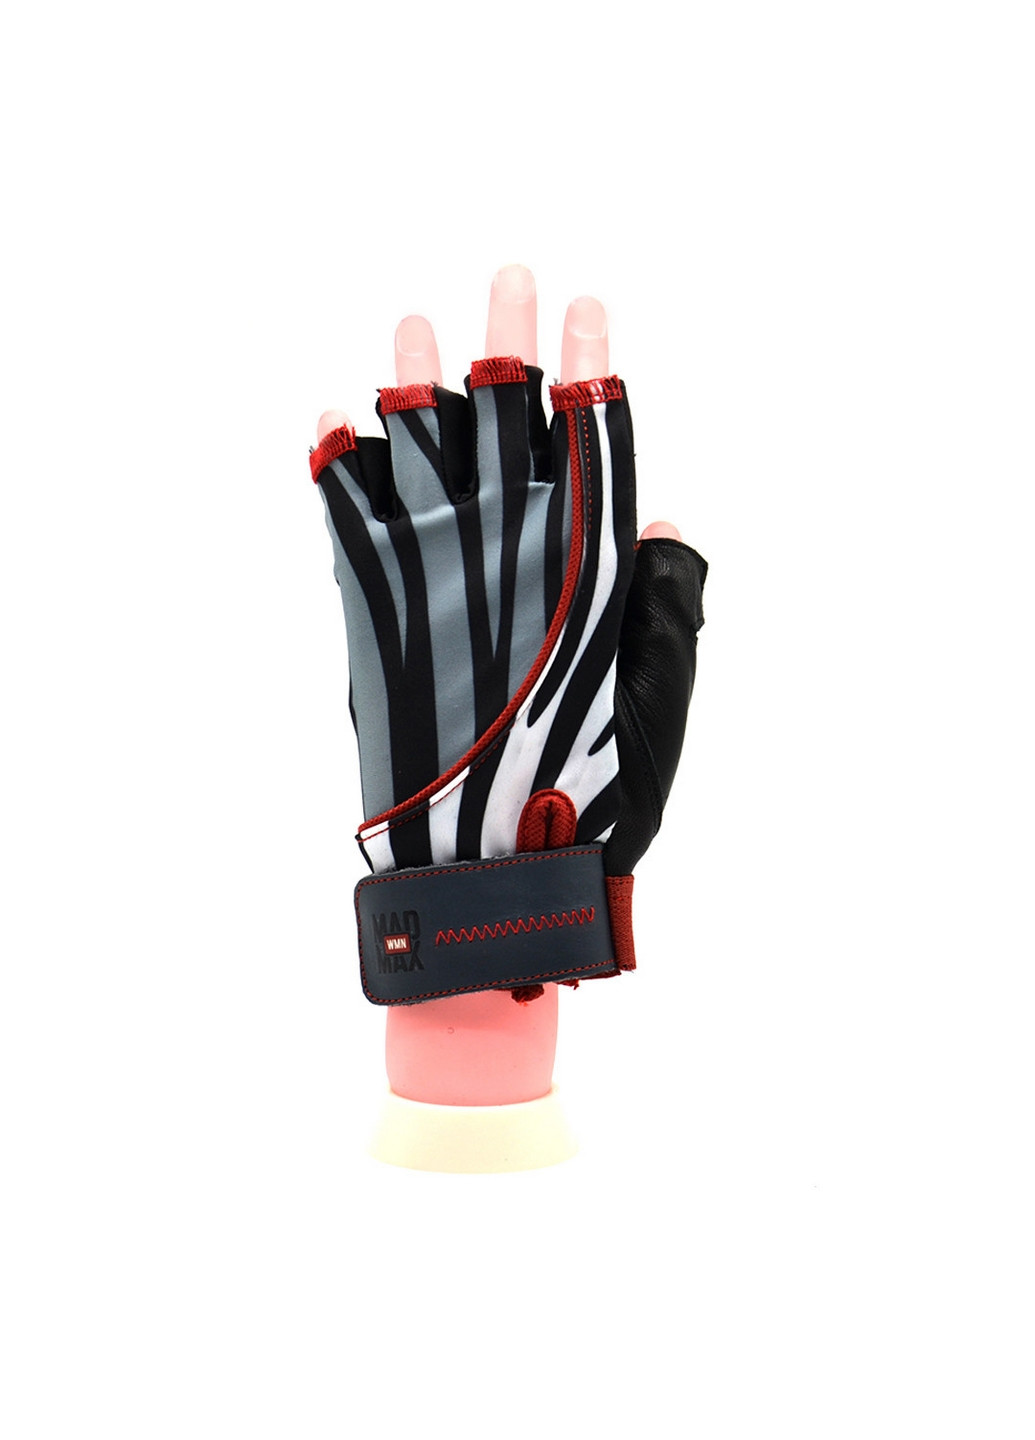 Унисекс перчатки для фитнеса S Mad Max (267656610)